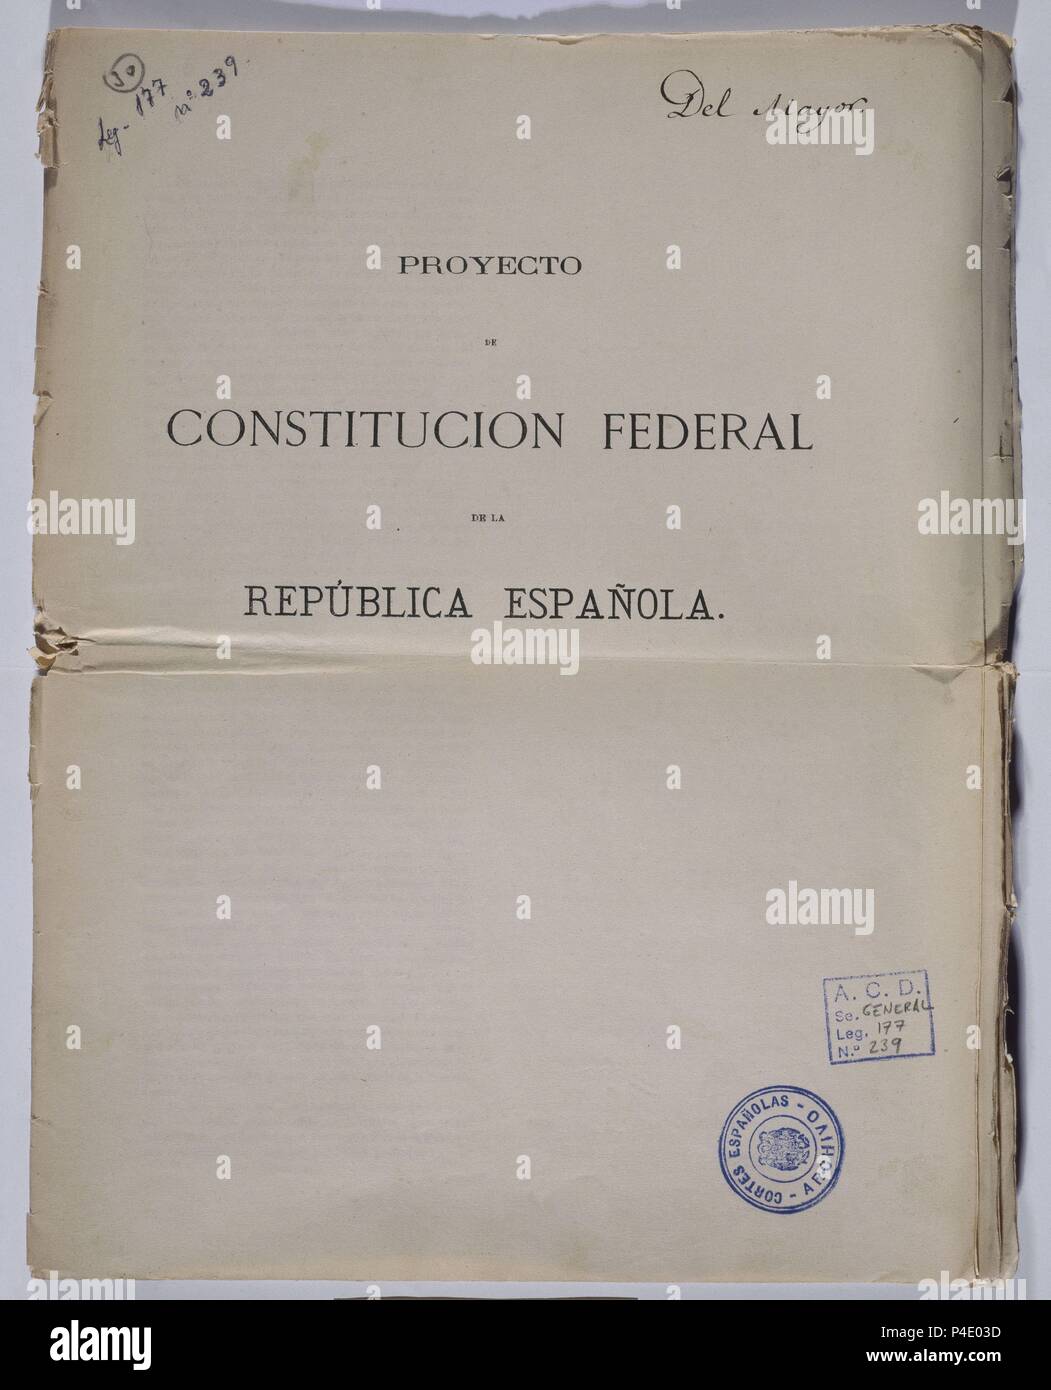 PROYECTO DE CONSTITUCION FEDERAL DE LA PRIMERA REPUBLICA - 1873. Location: CONGRESO DE LOS DIPUTADOS-BIBLIOTECA, MADRID, SPAIN. Stock Photo